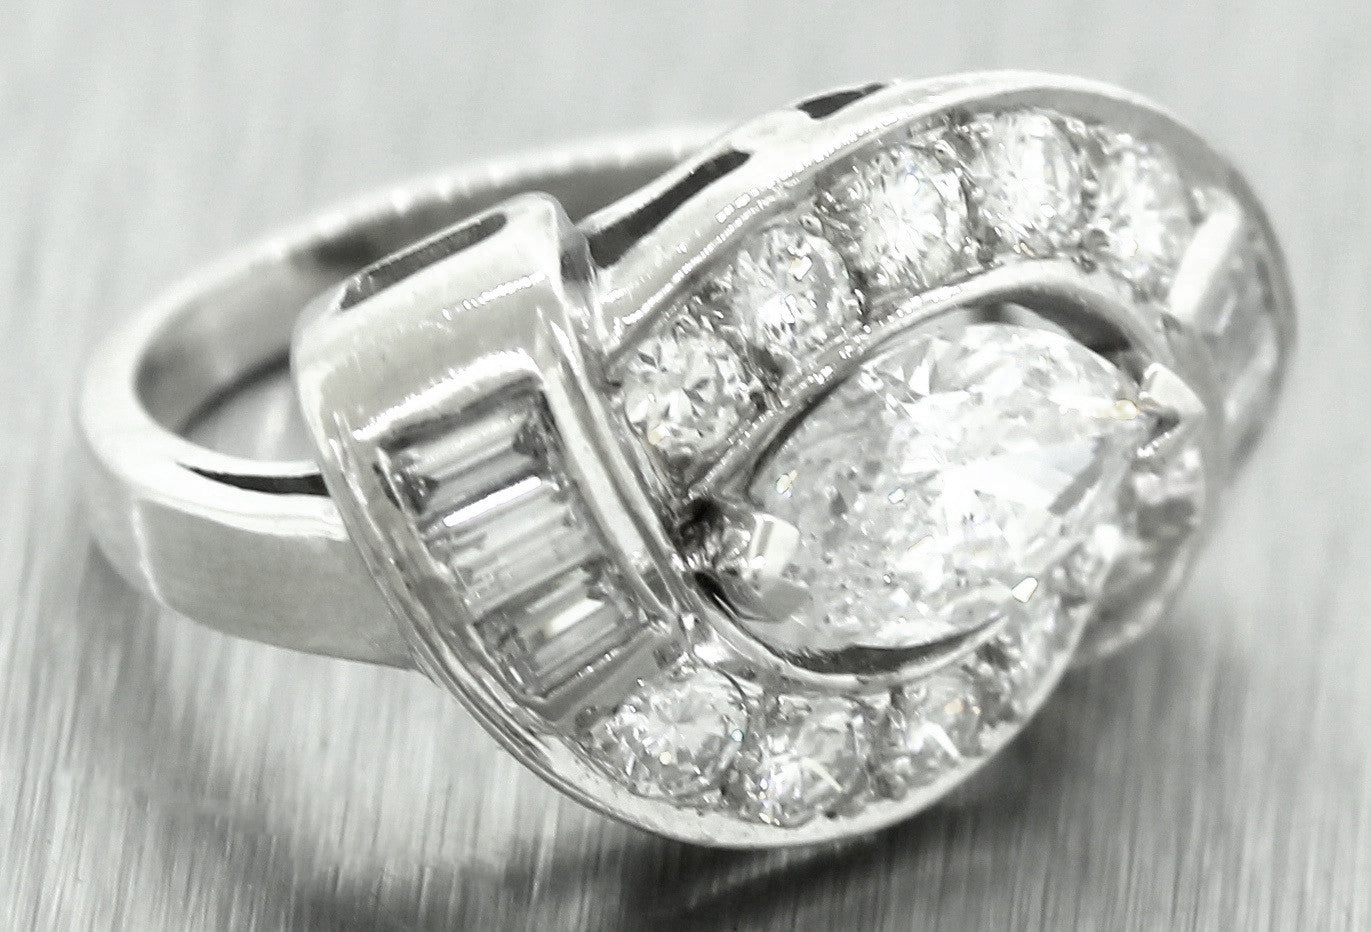 Ladies Vintage Estate Platinum 1.12ct Marquise Brilliant Diamond Engagement Ring